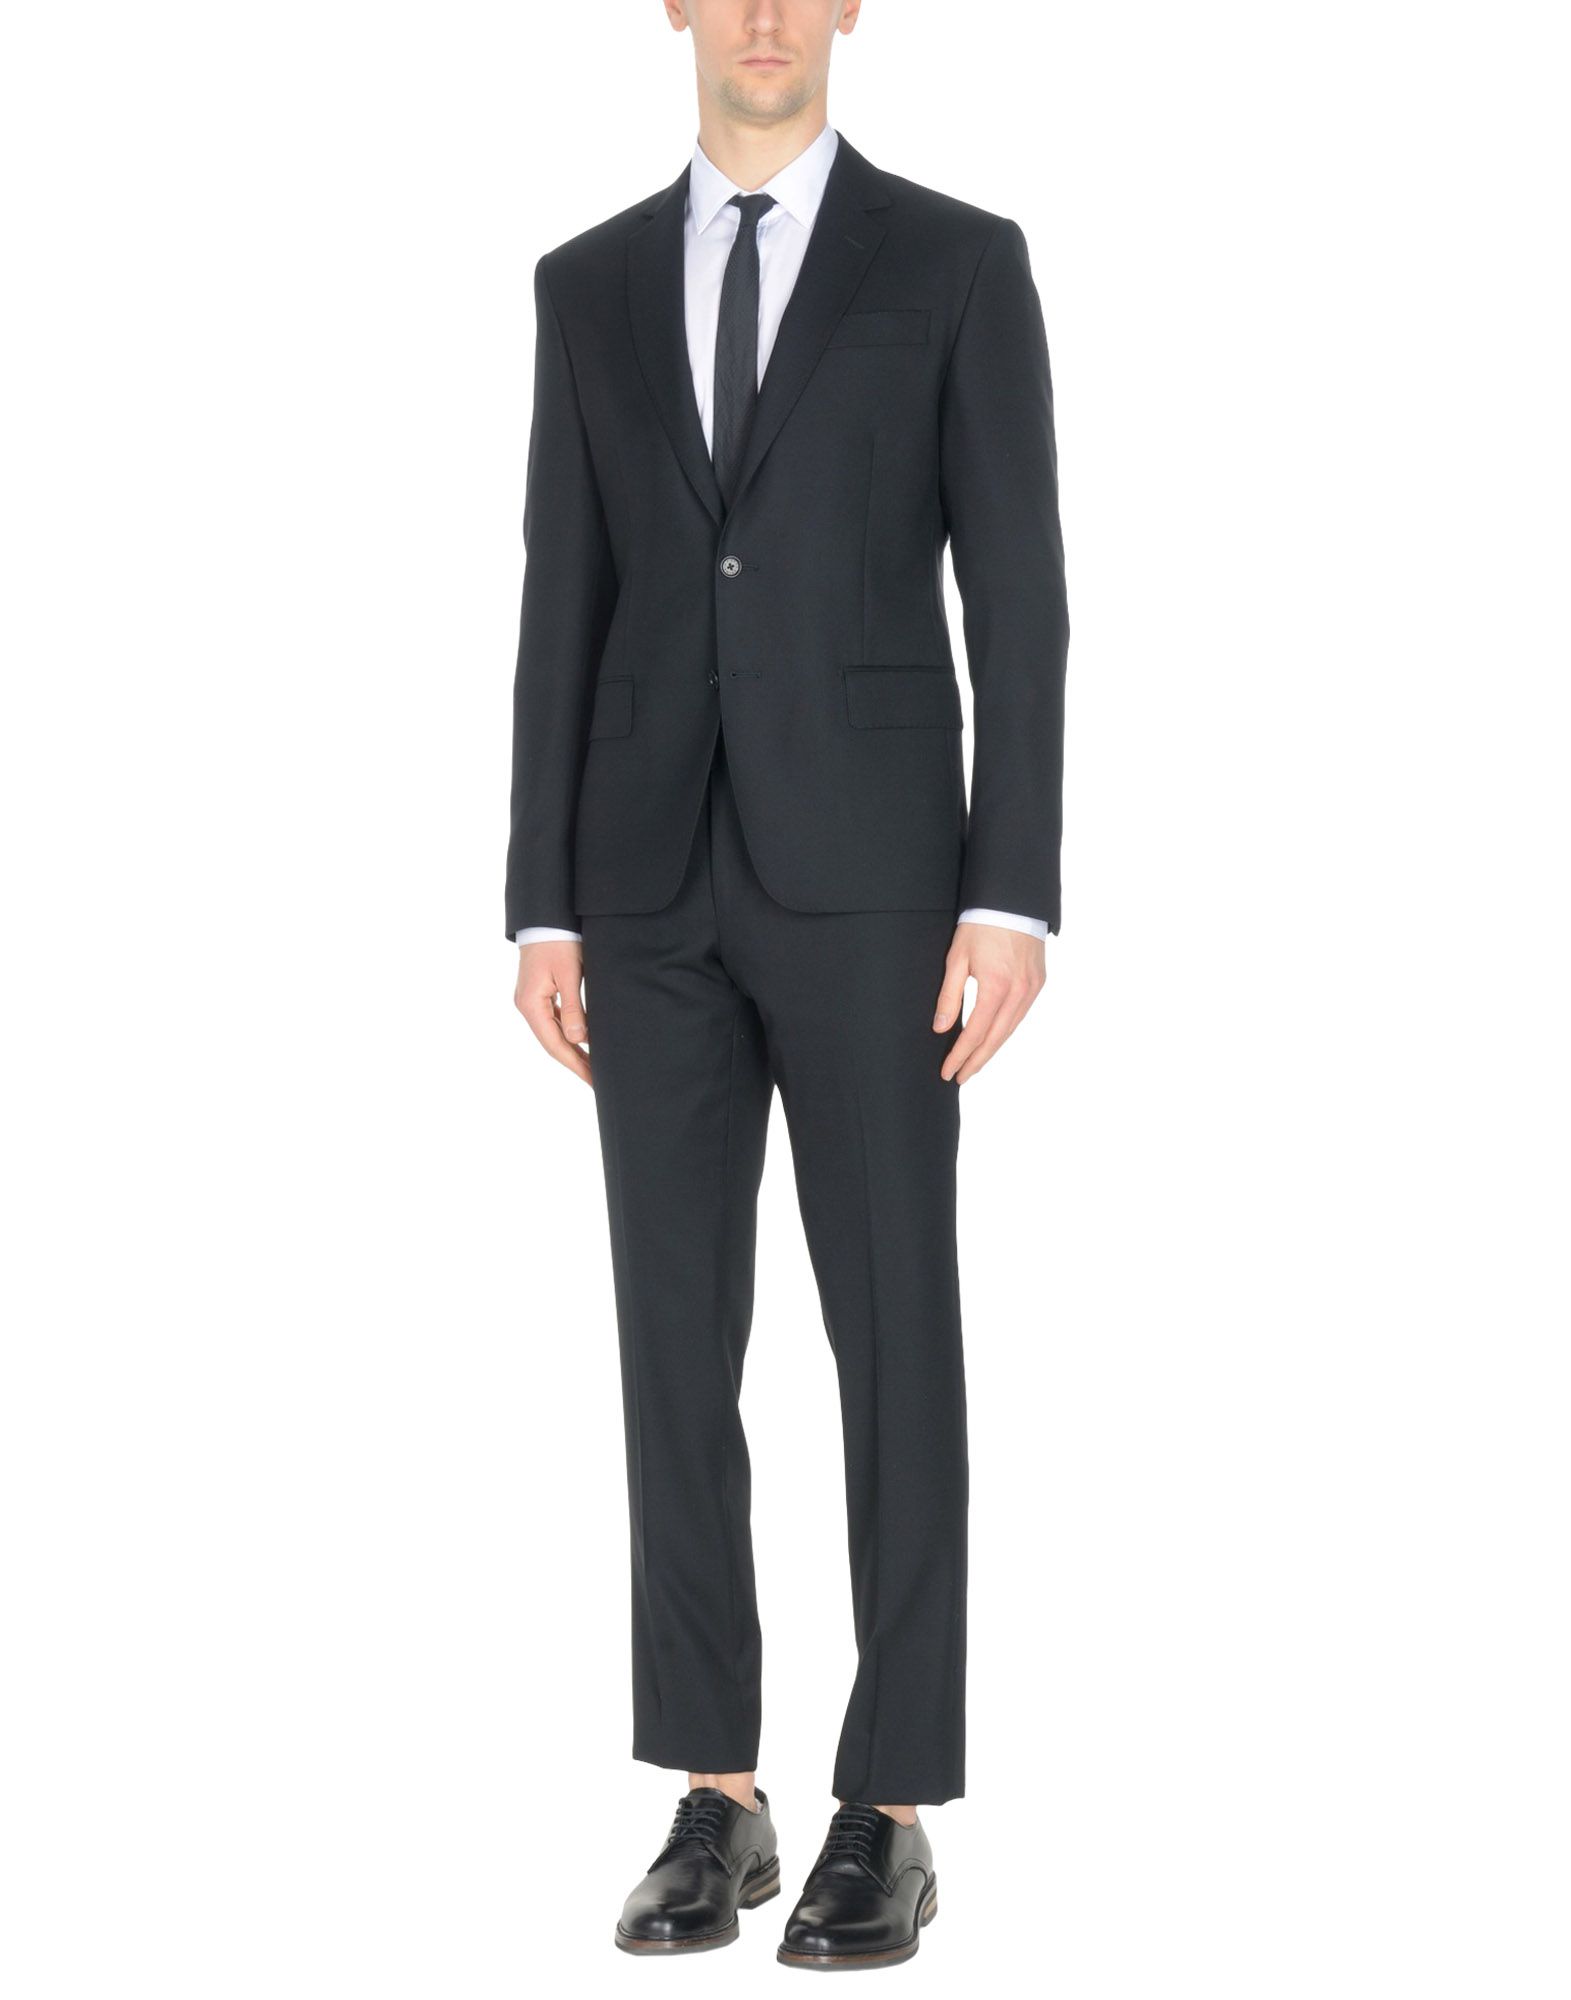 PIERRE BALMAIN Suits,49368598HT 4